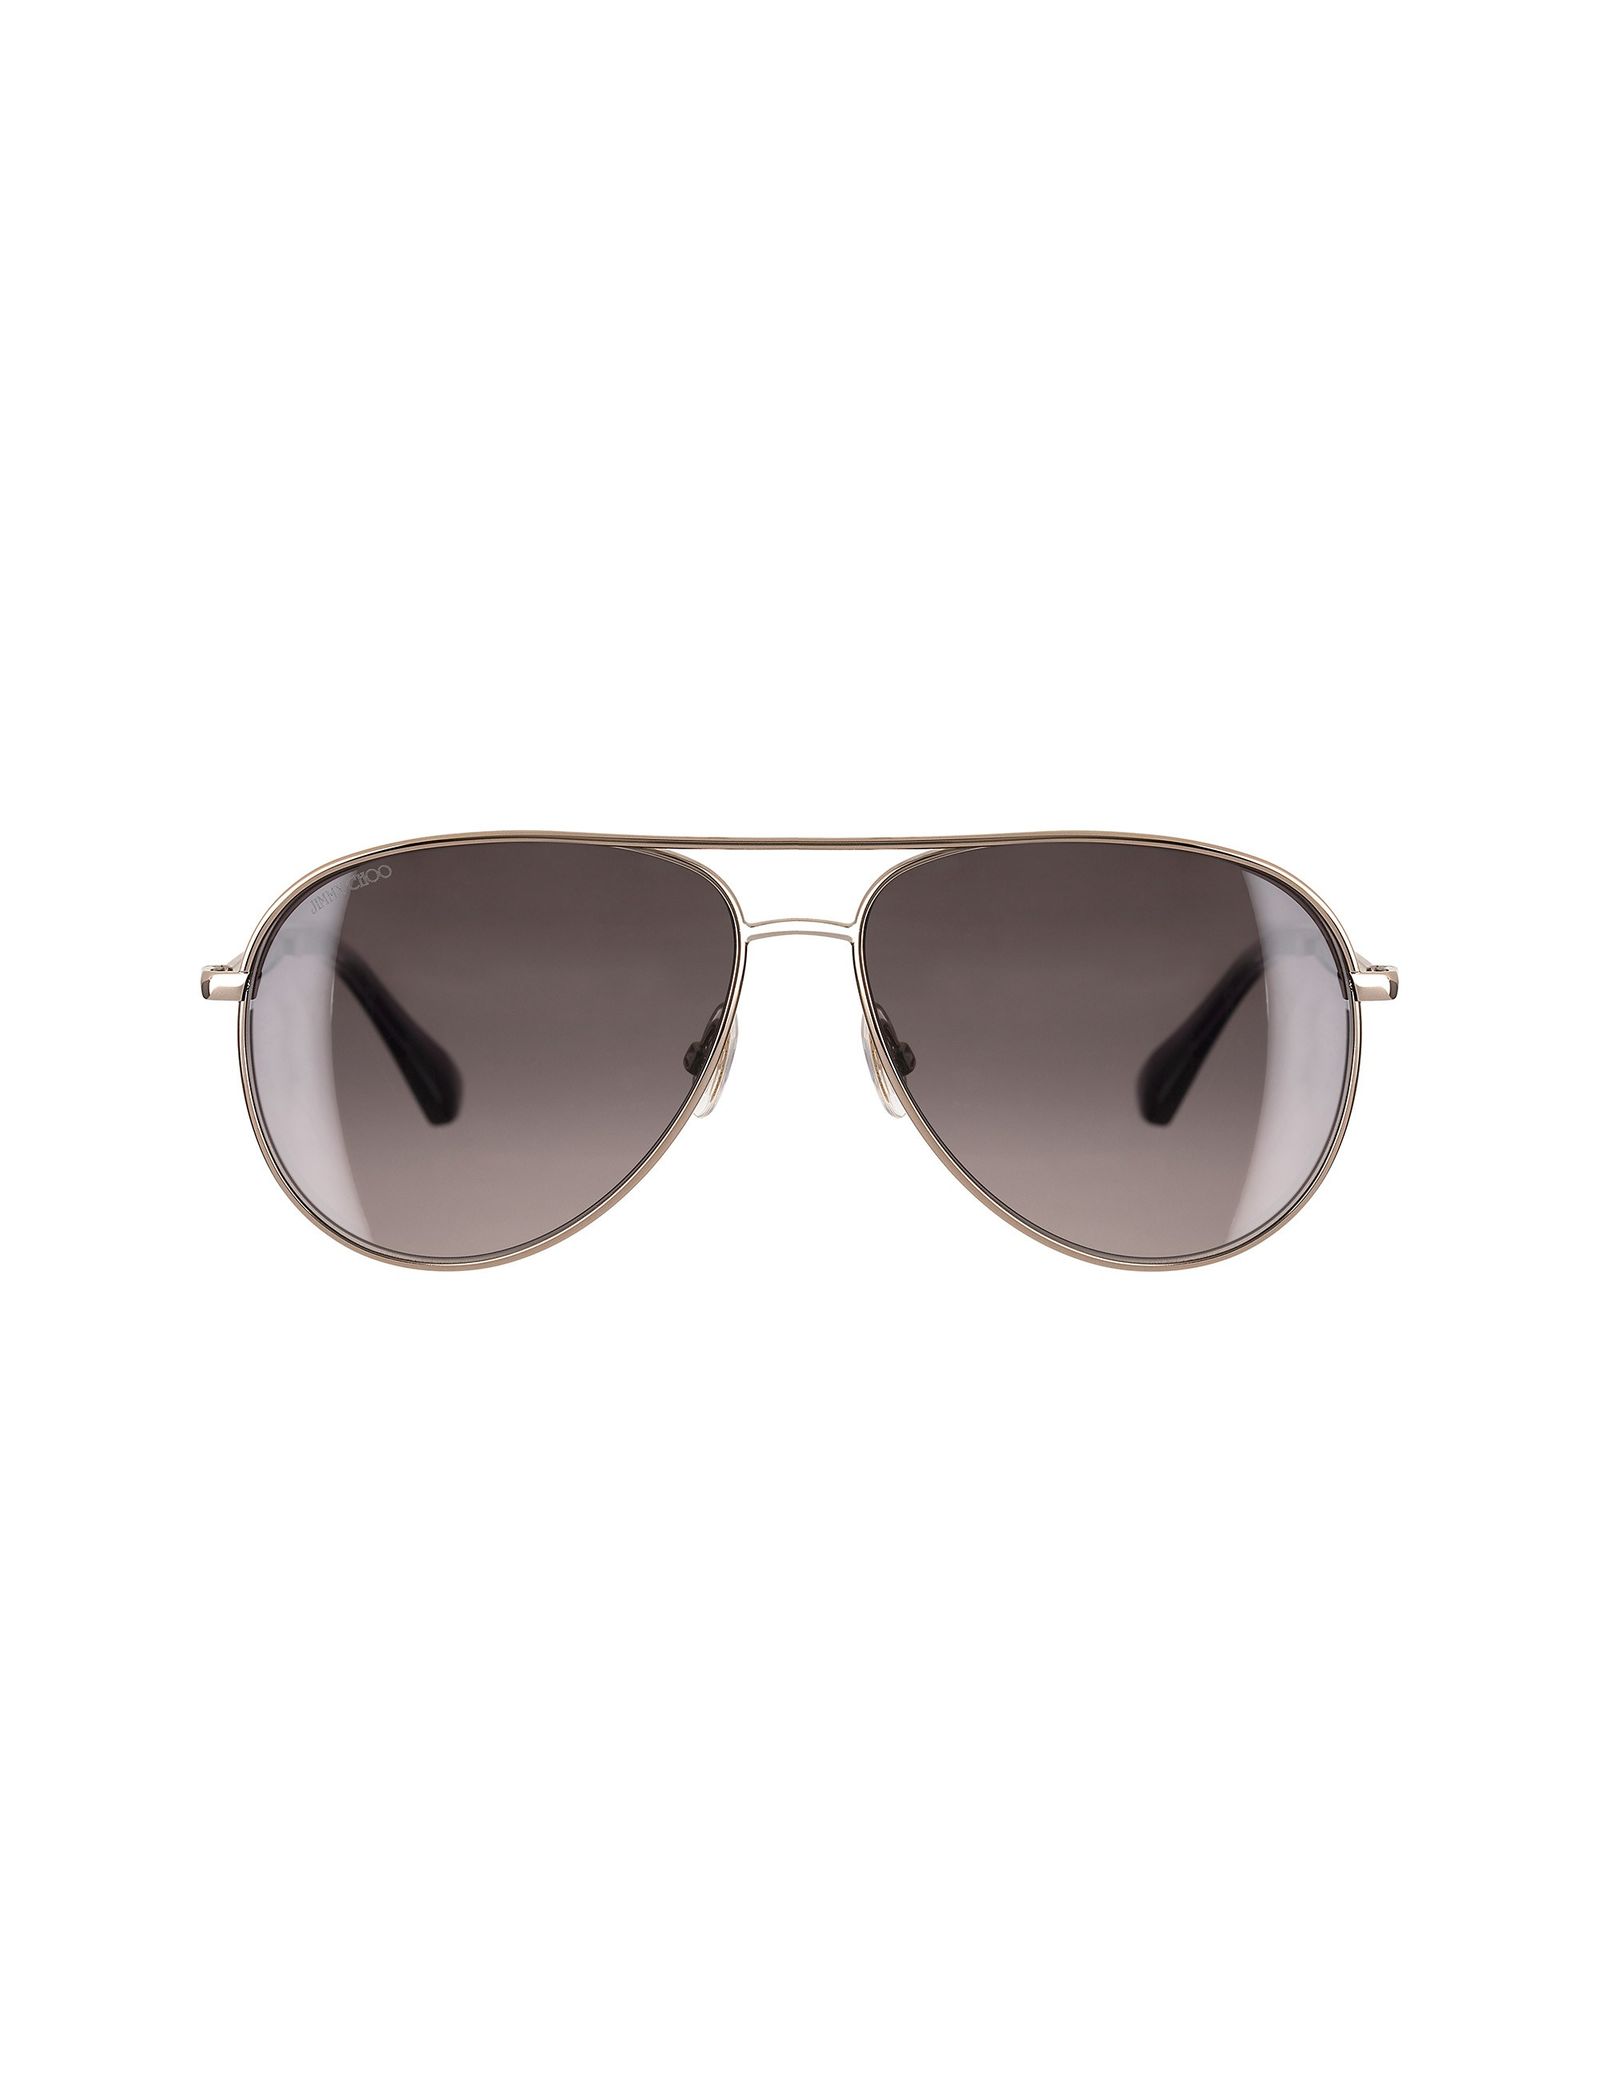 عینک آفتابی خلبانی زنانه - جیمی چو - طلايي - 2